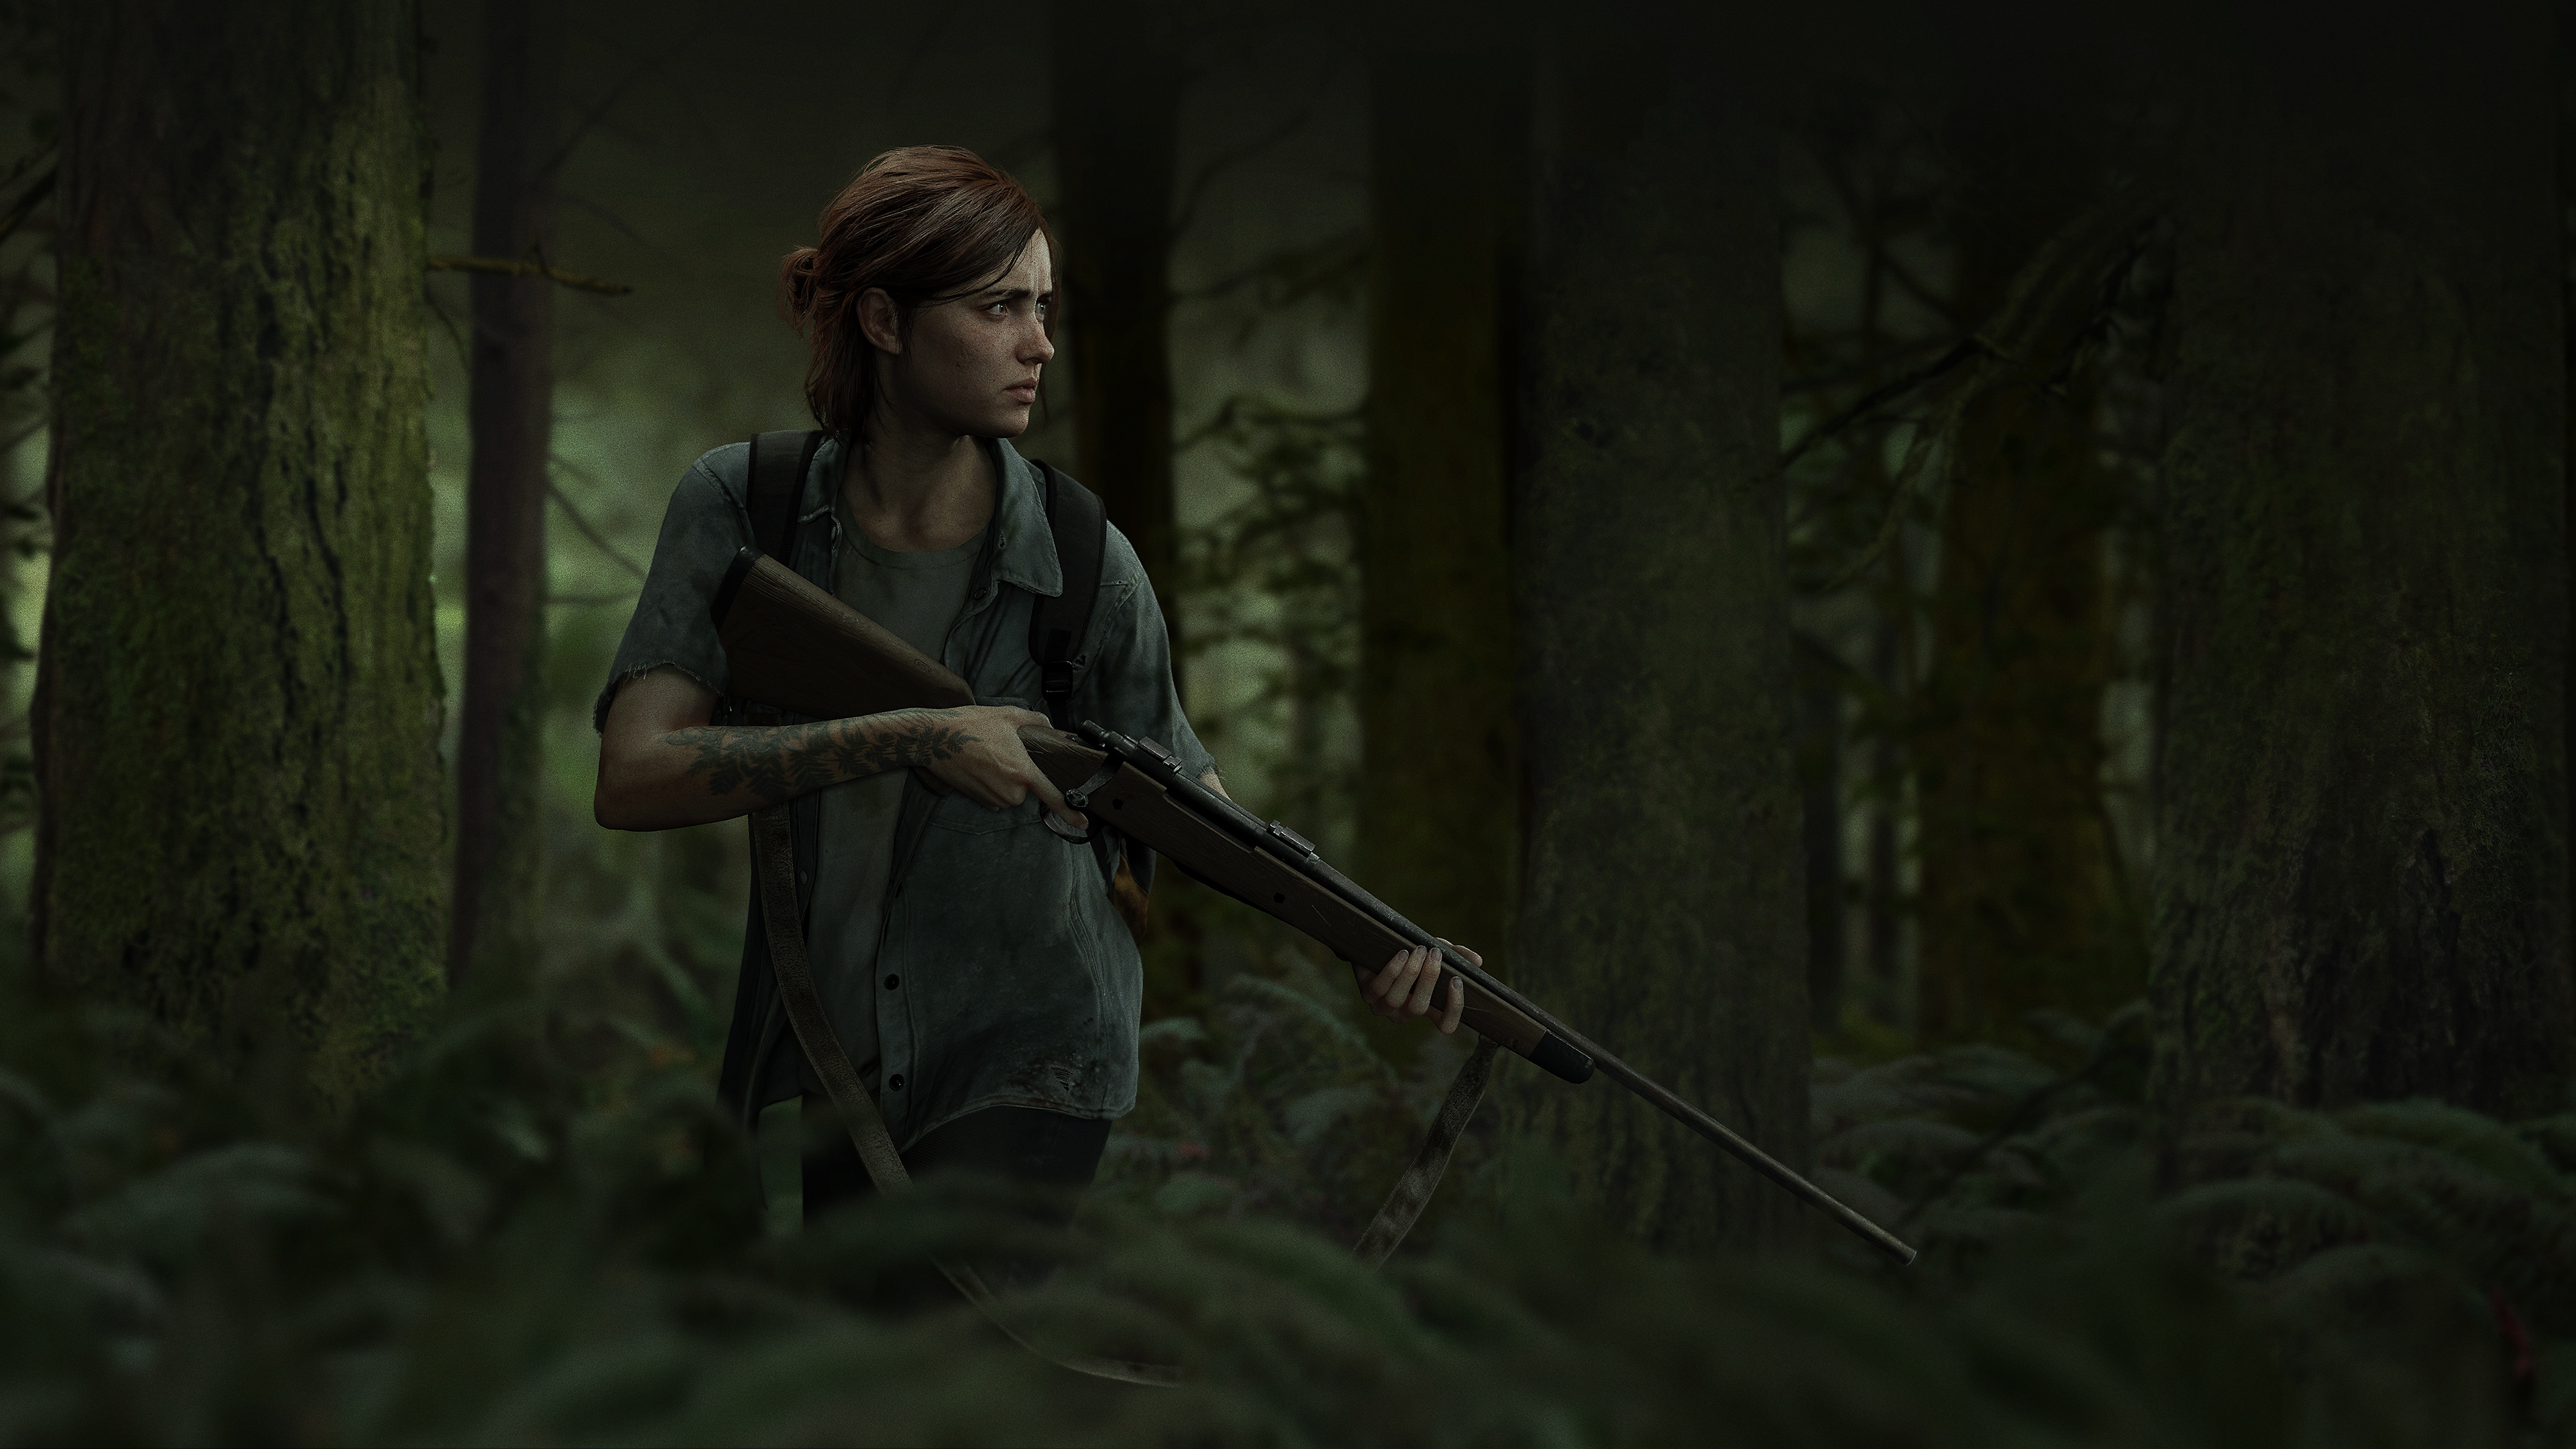 The Last of Us Part II - Dag van de uitbraak 2018 - Desktop